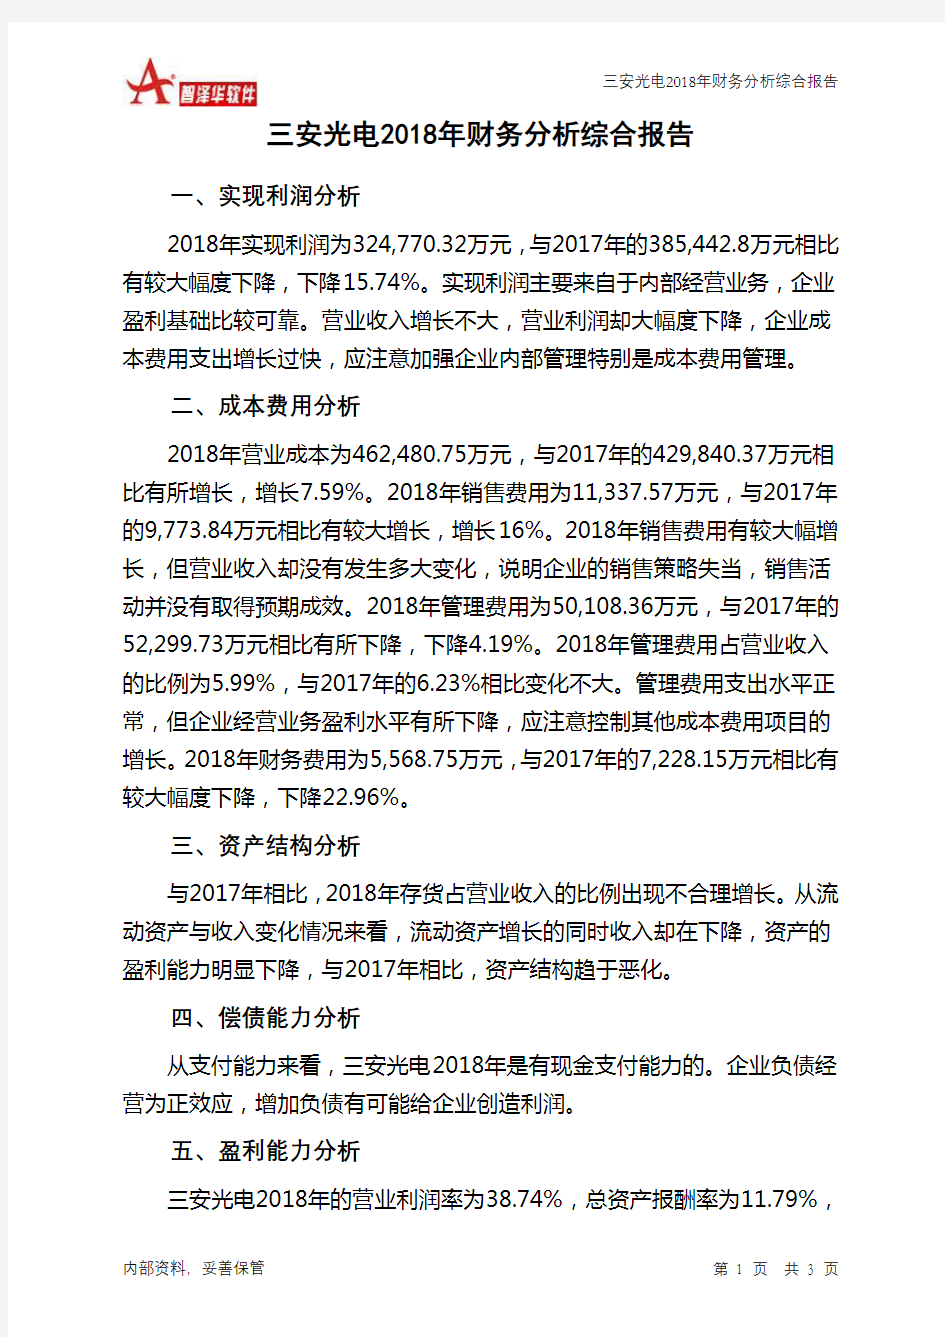 三安光电2018年财务分析结论报告-智泽华